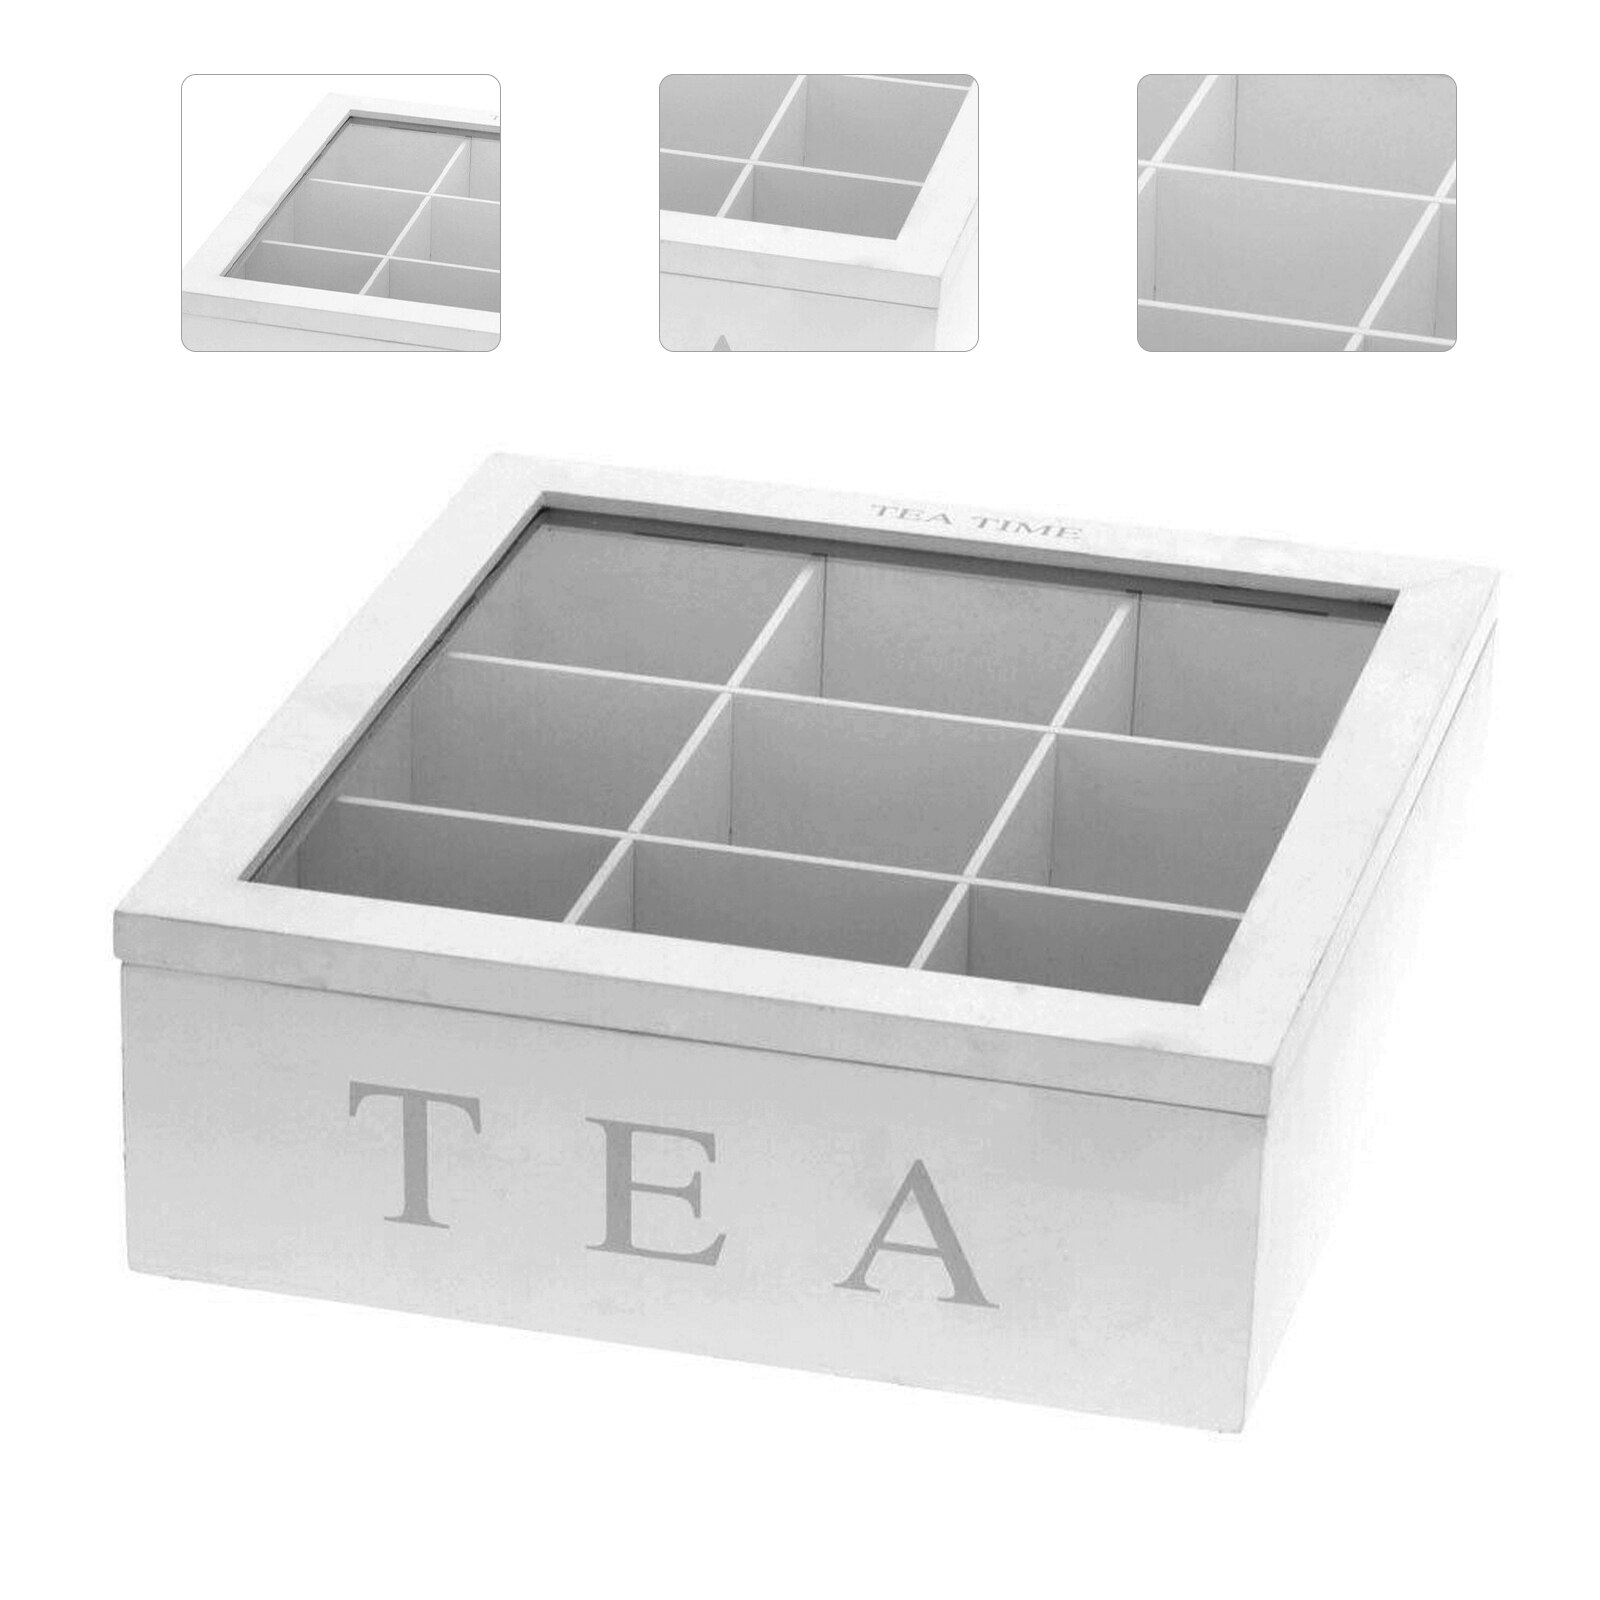 Træ te boks arrangør container træ opbevaringsrum kabinetter retro kaffe te slik taske holder arrangør til køkken